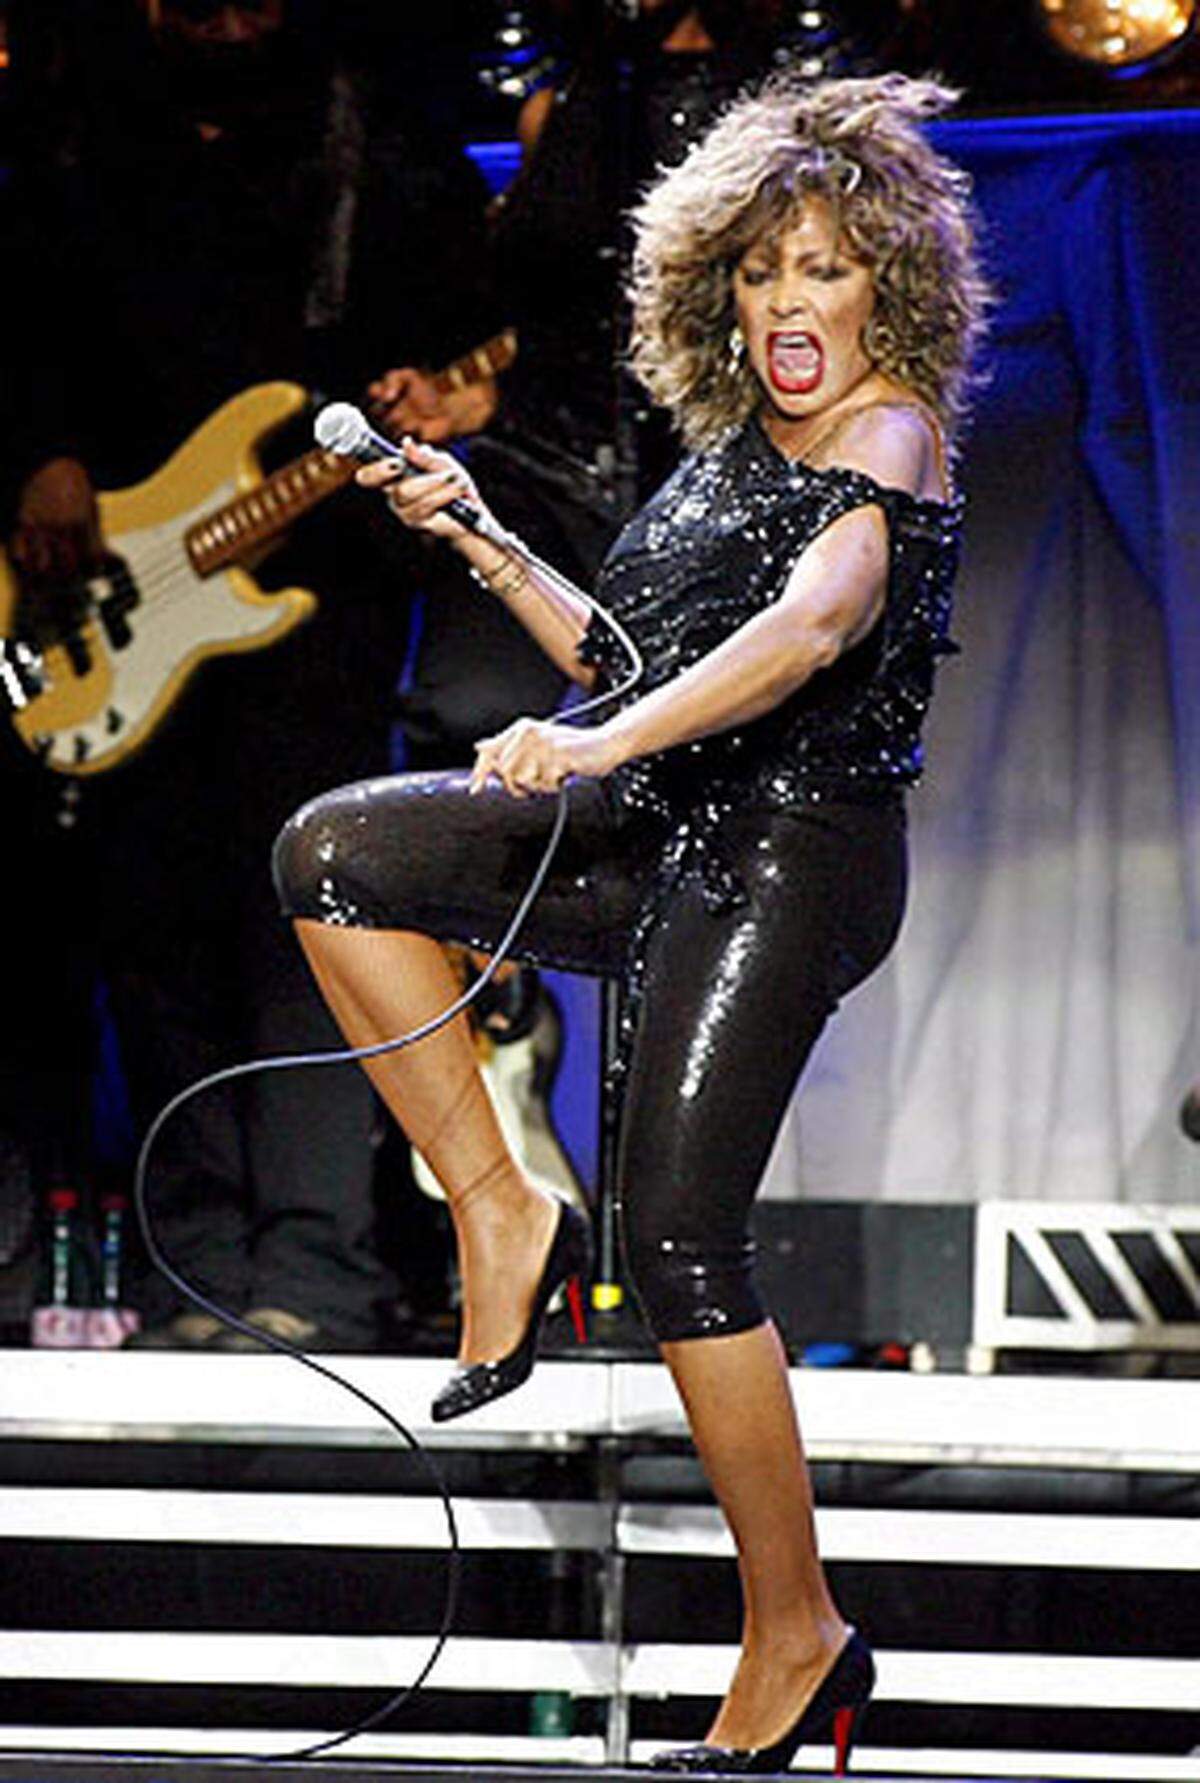 Mit ihrem Ex-Mann Ike sorgte Tina Turner für mehr als nur musikalische Furore, ihre ersten zwei Soloalben waren allerdings nicht mehr als ein kommerzielles Desaster. Der Schock dürfte gesessen haben, zu einem weiteren Album ließ sich Turner erst vier Jahre später hinreißen. Unerwartet wurde "Private Dancer" jedoch ihr bestes Album, das der Sängerin viele Hits bescherte: "What's Love Got to Do with It", "Private Dancer" und "Better Be Good To Me".